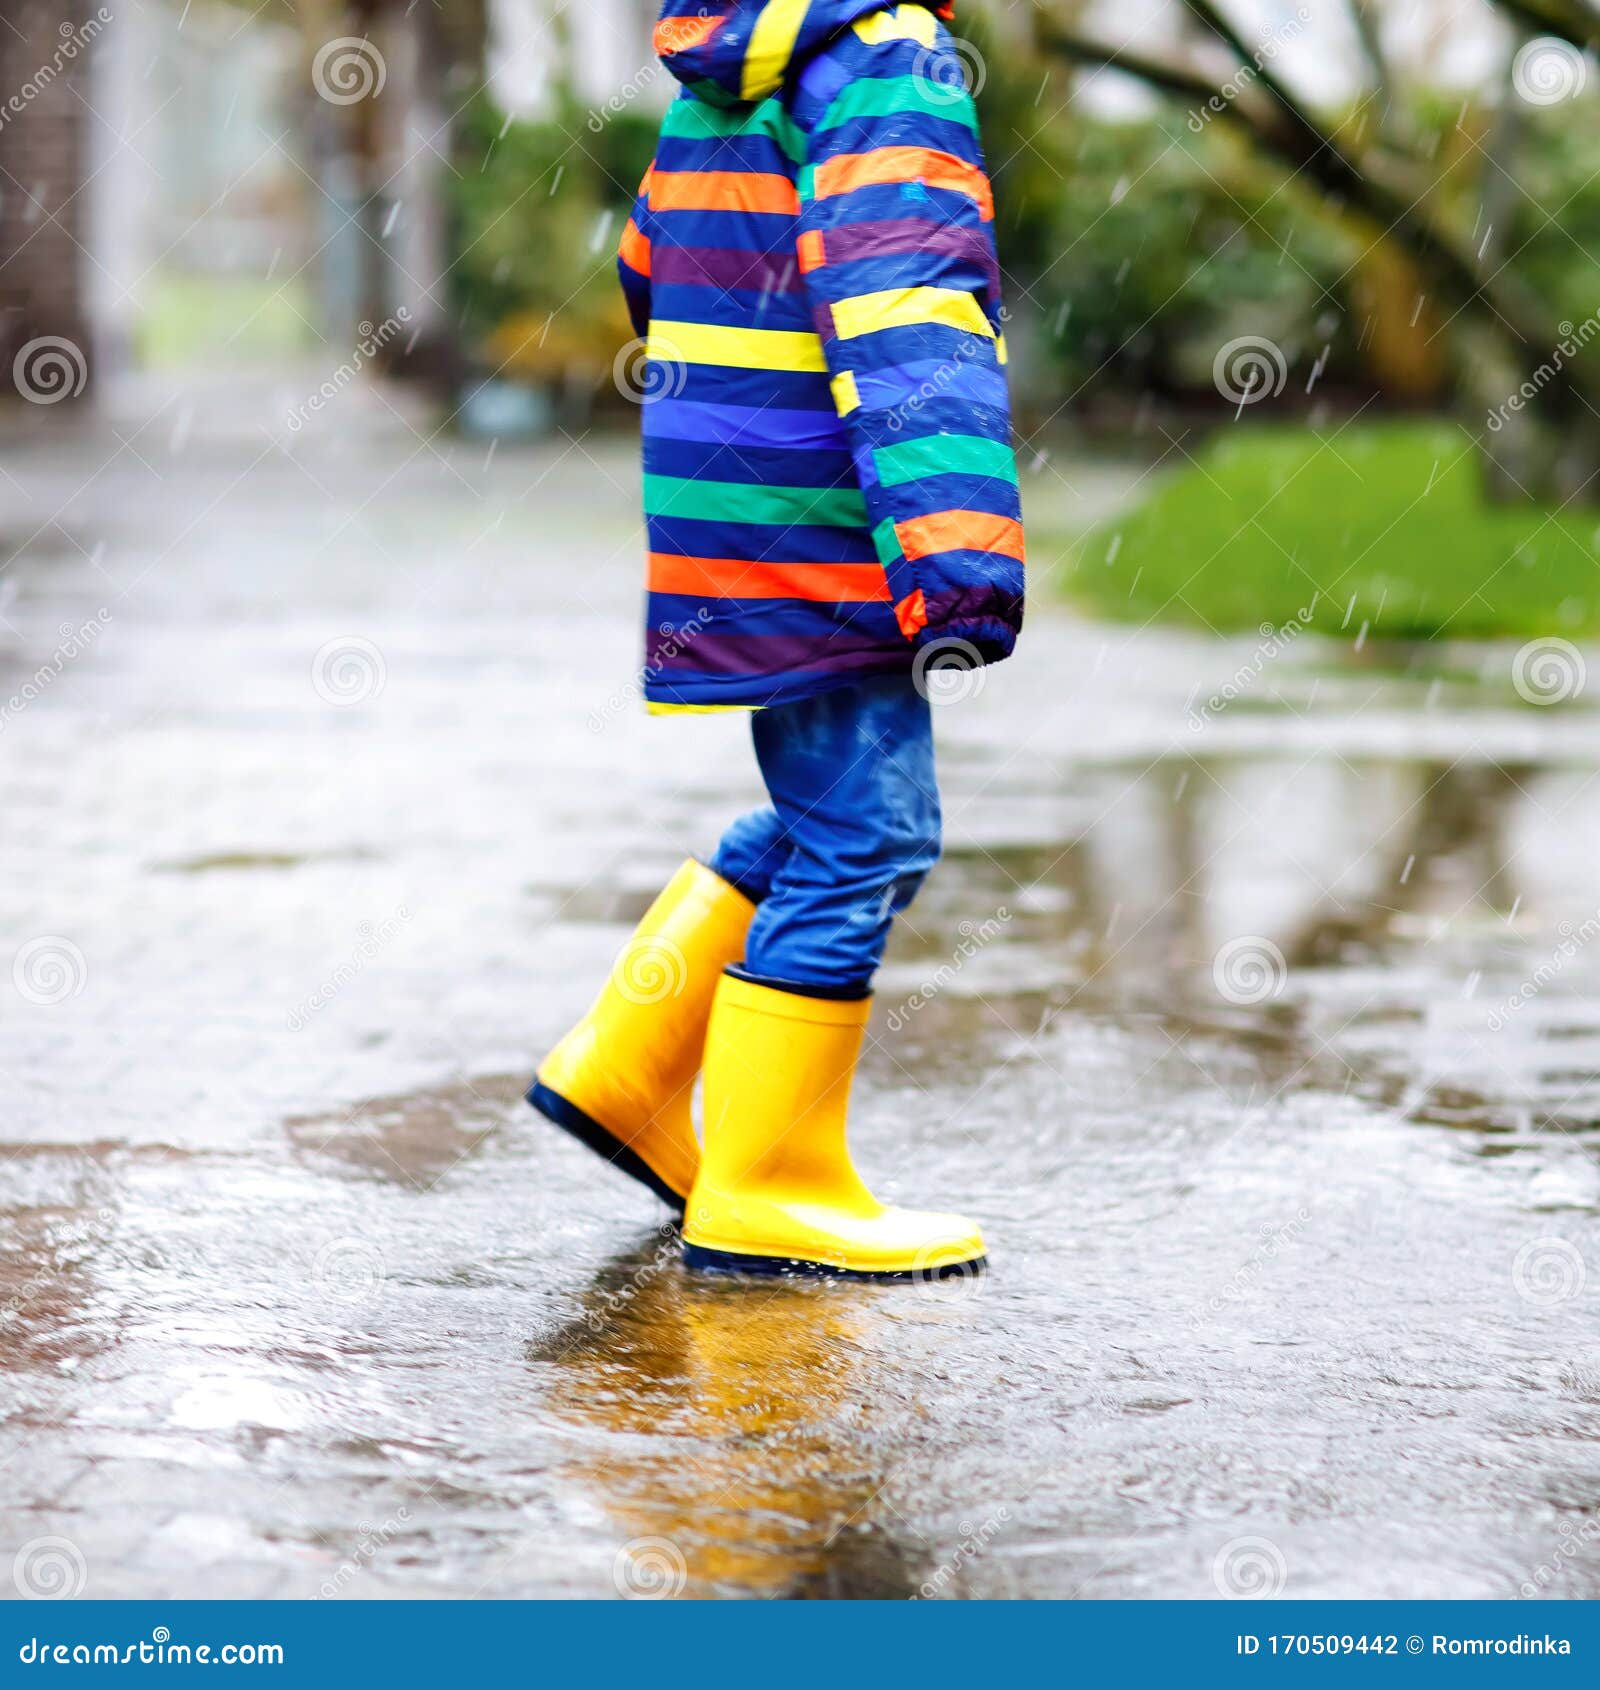 Primer Plano De Un Niño Que Lleva Botas De Lluvia Amarillas Y Camina Durante El Sueño, La La Nieve En El Día Frío Niño D Foto de archivo - Imagen